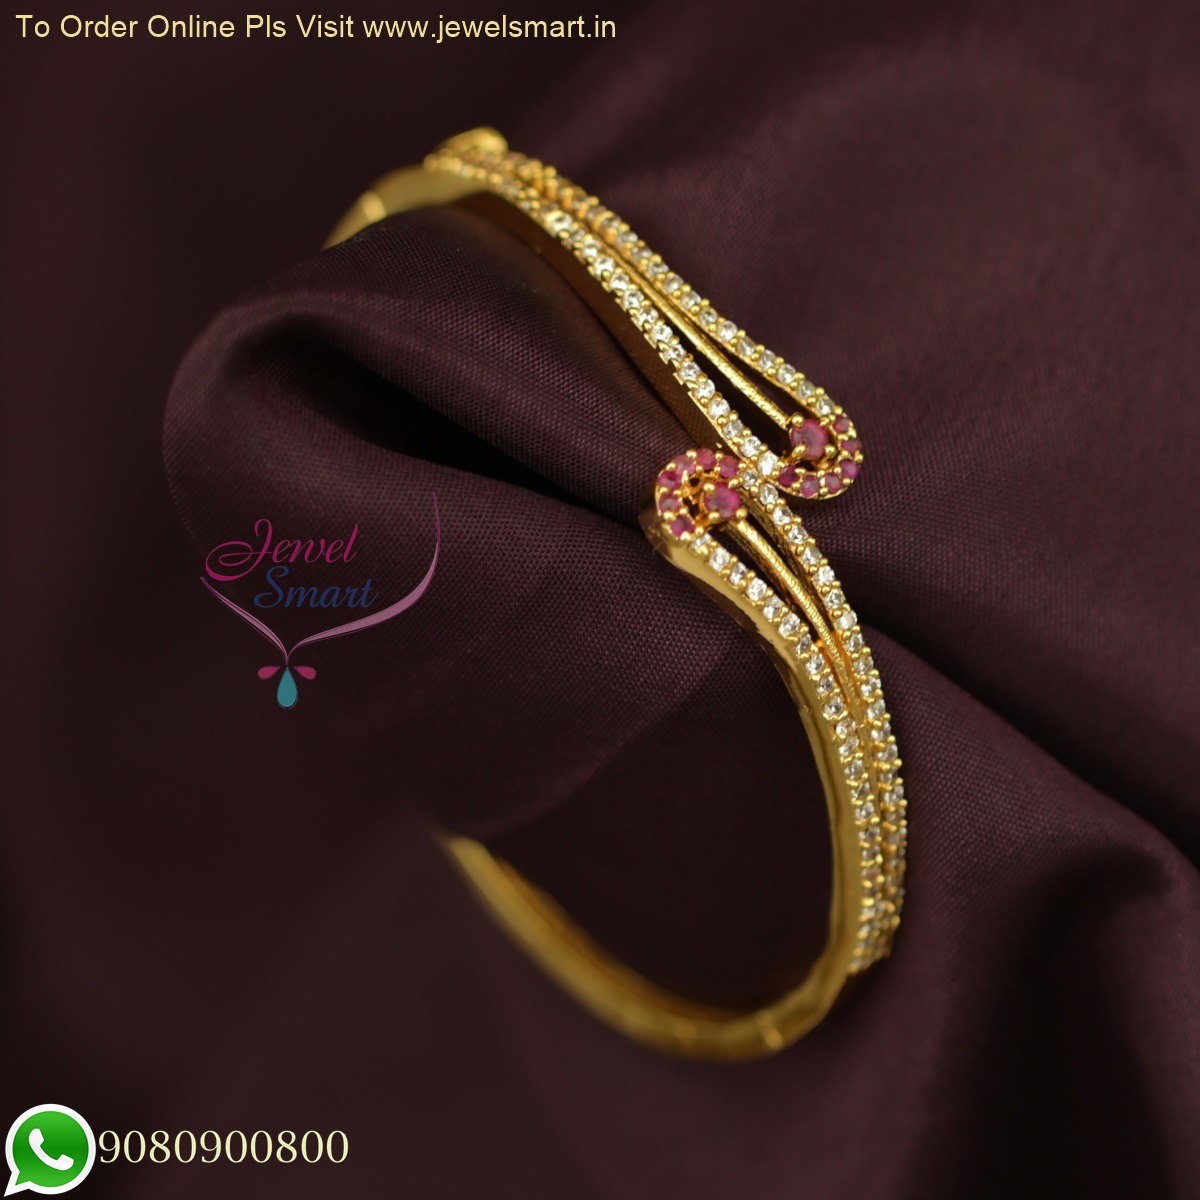 Unique Gold Bracelet Design For Women - PC Chandra Jewellers